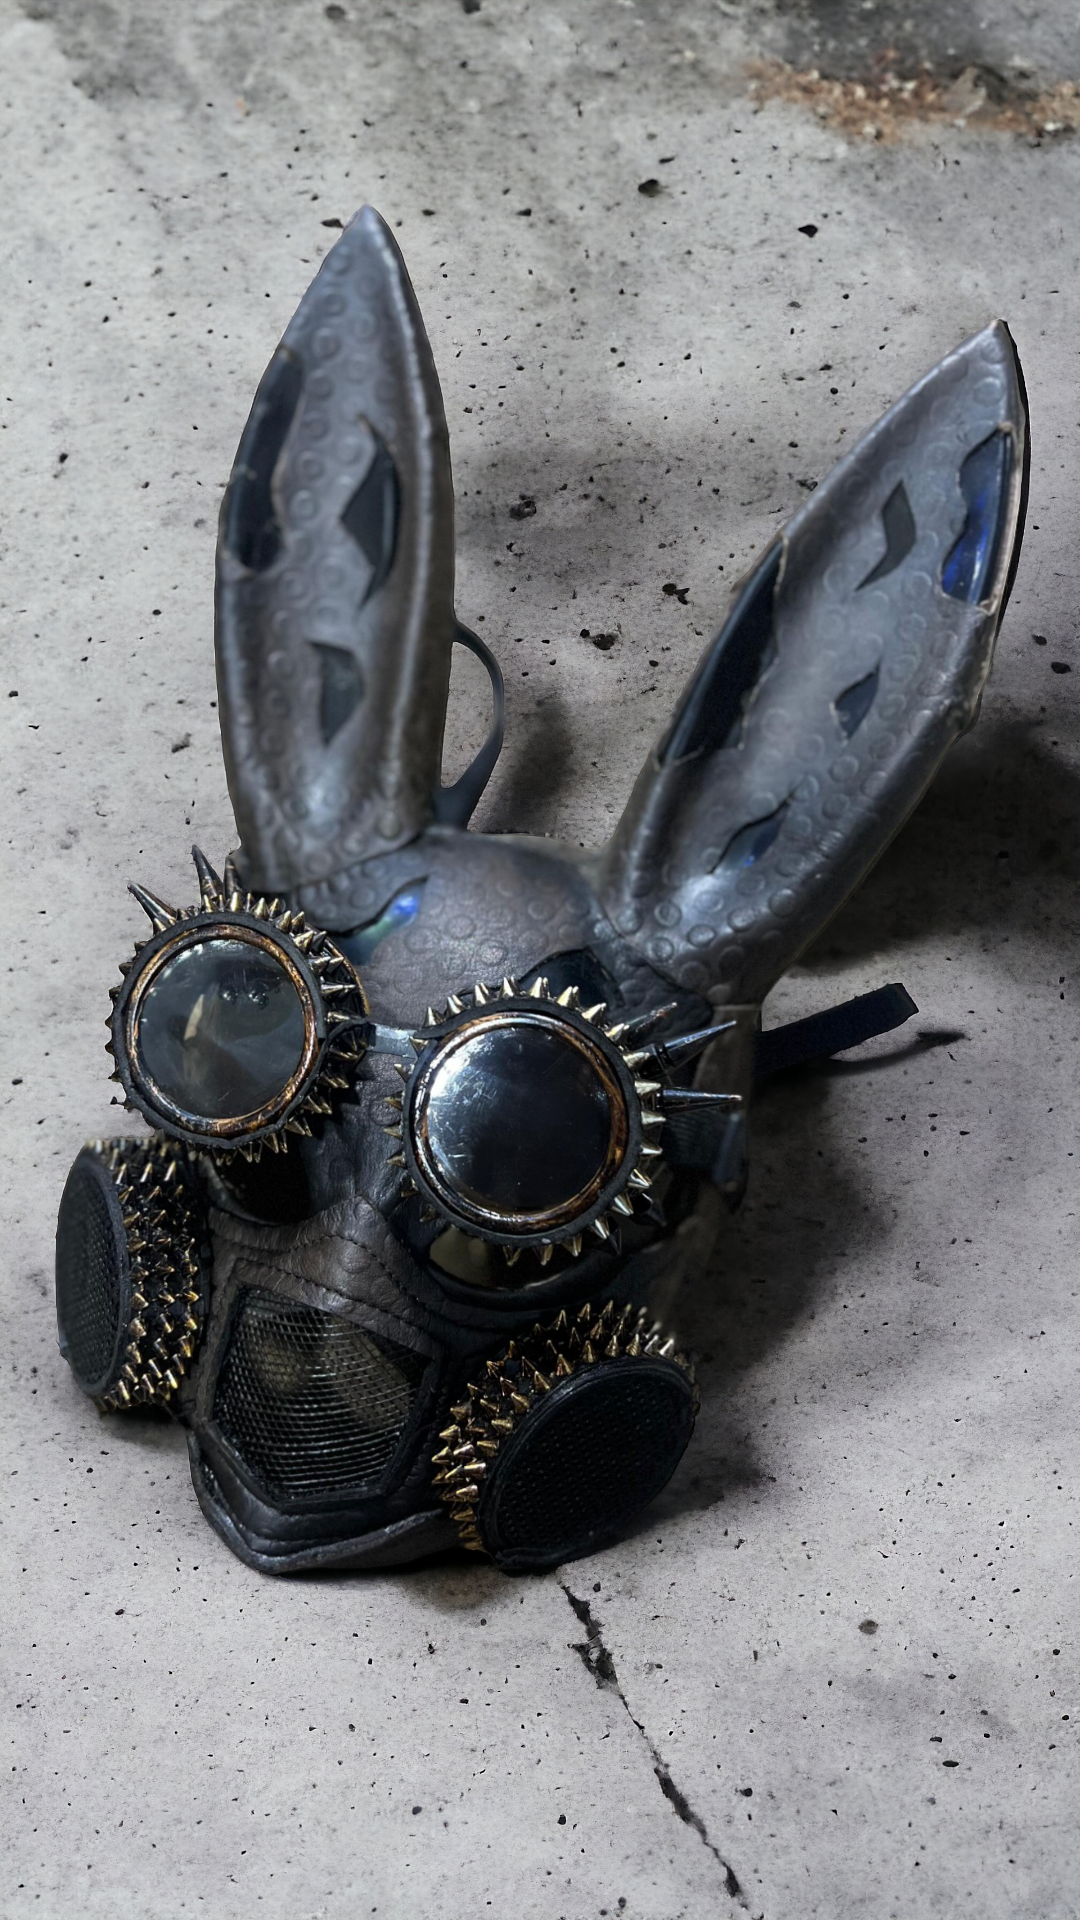 Rabbit Fury - Máscara MadMax